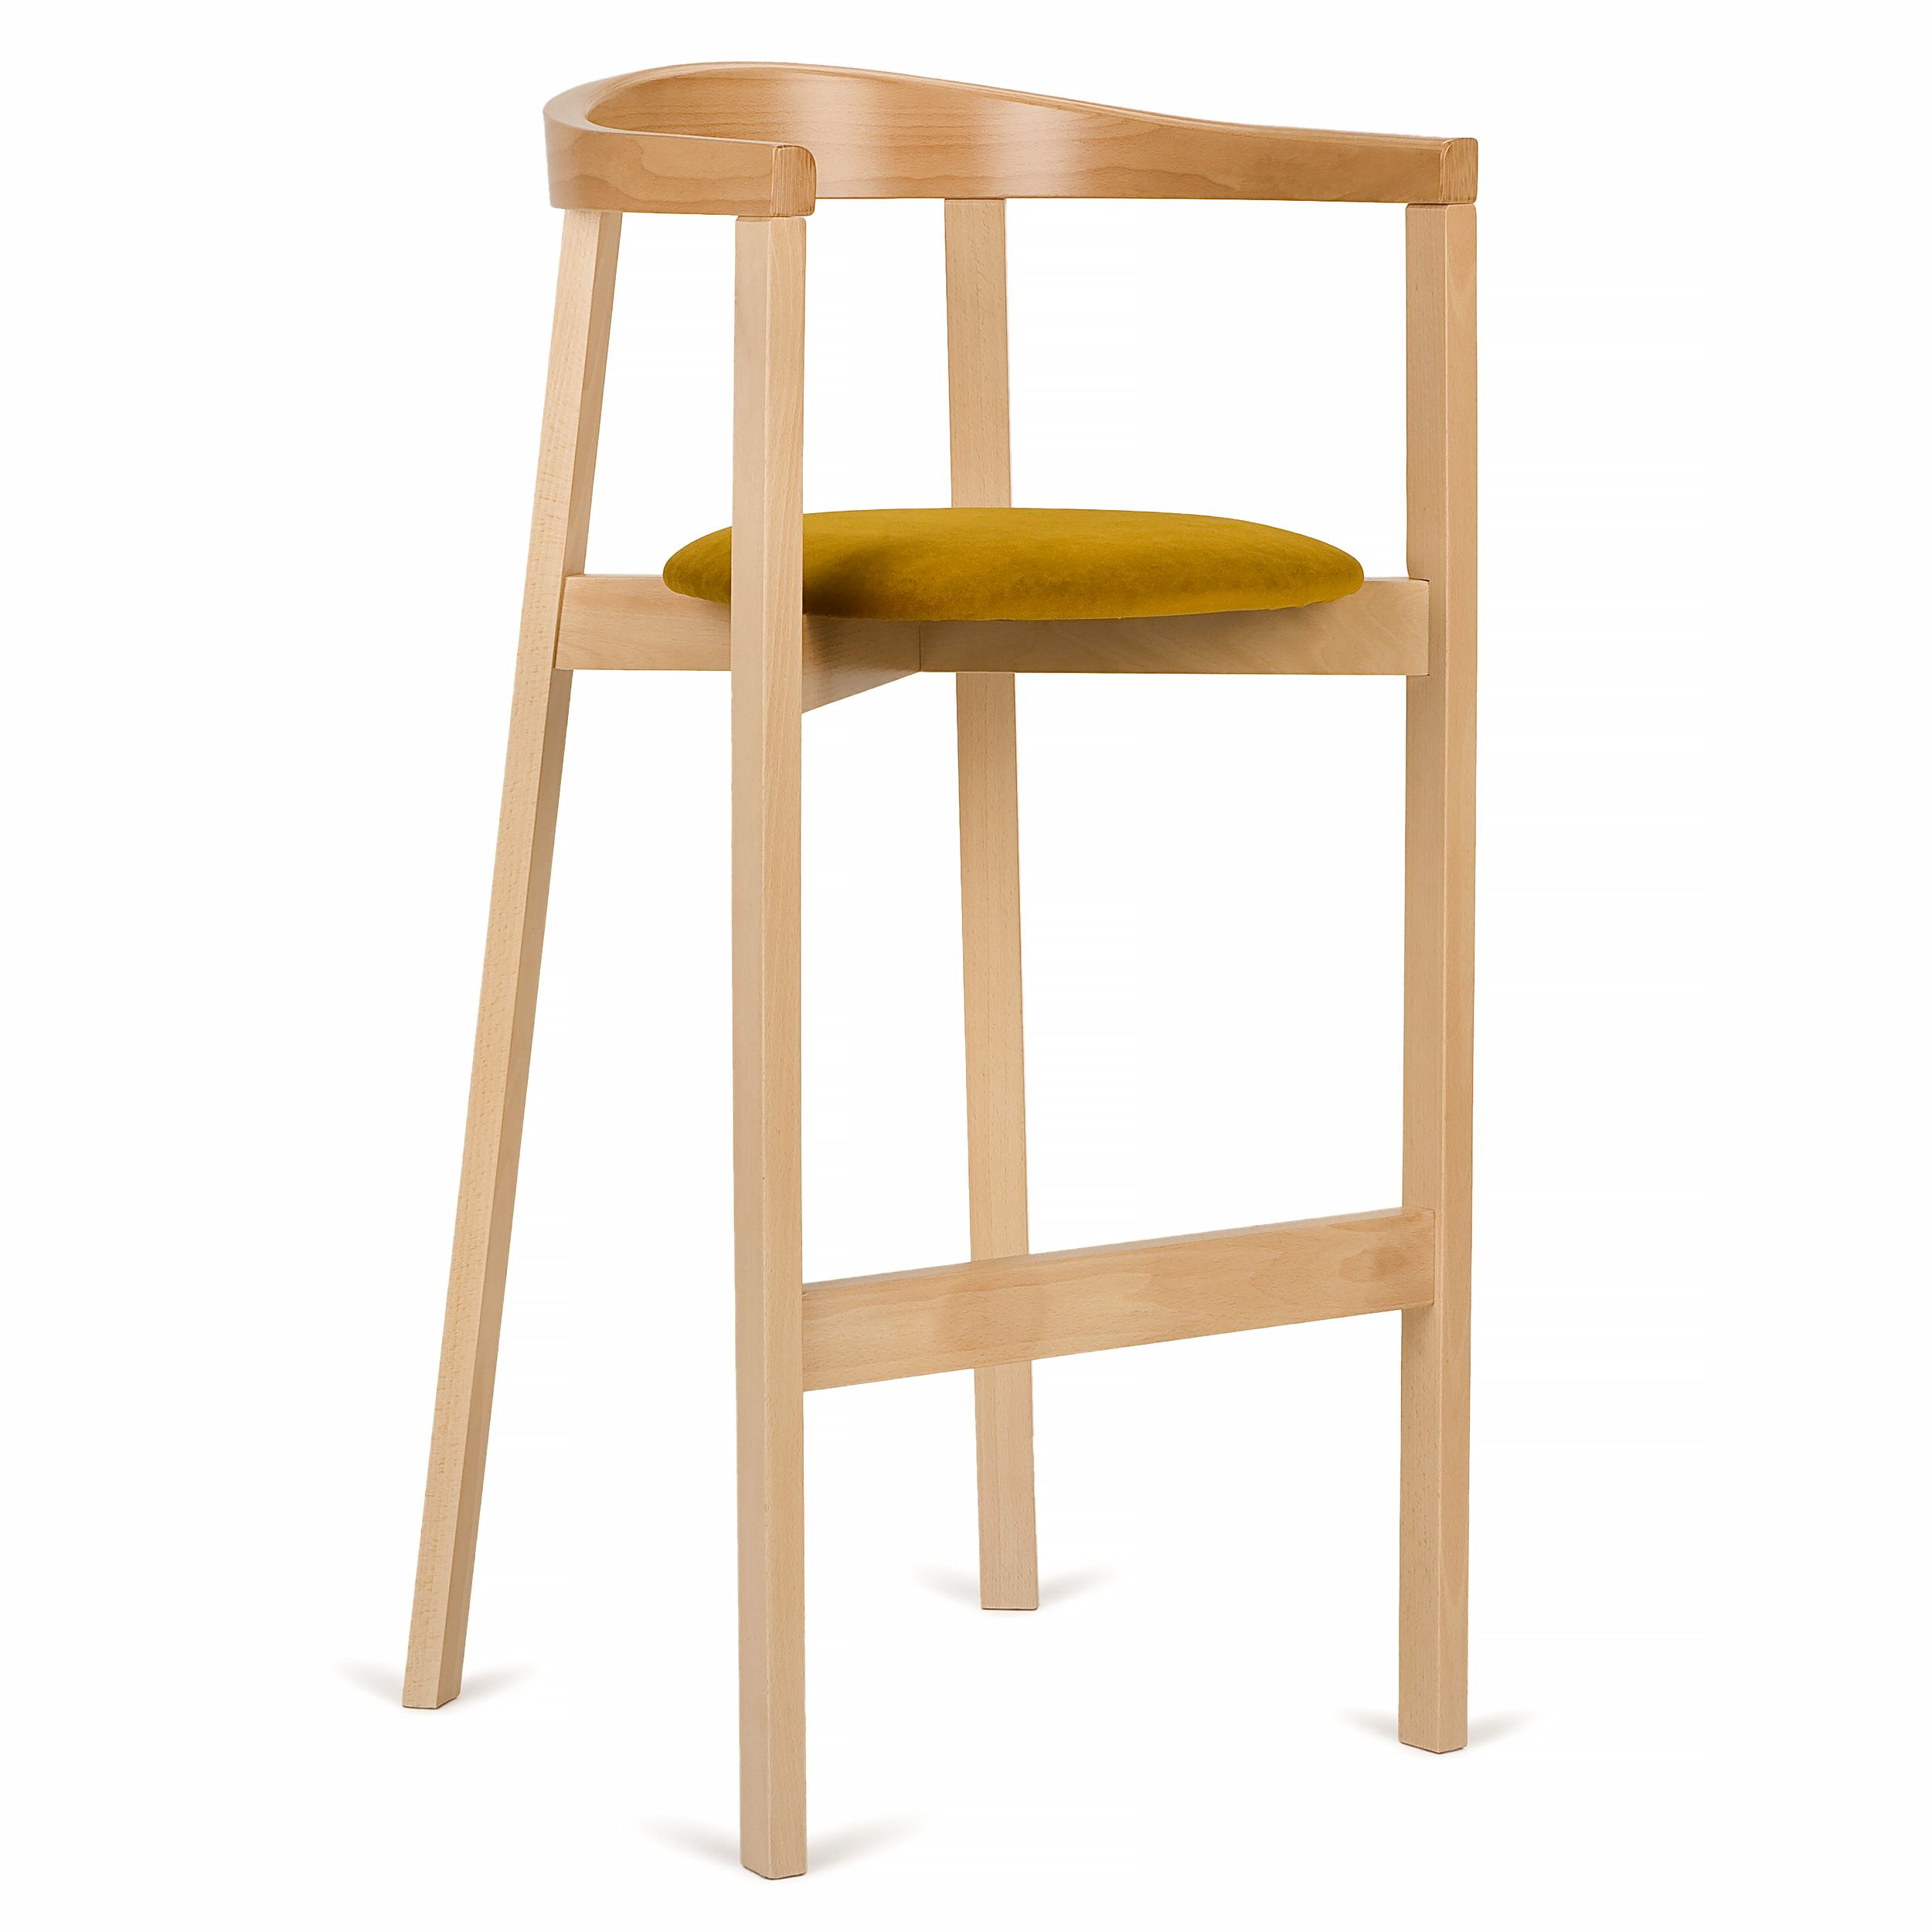 Paged купить. Дизайнерский барный стул. Paged стул. Стул барный дизайнерский дерево. Eco-19h стул.